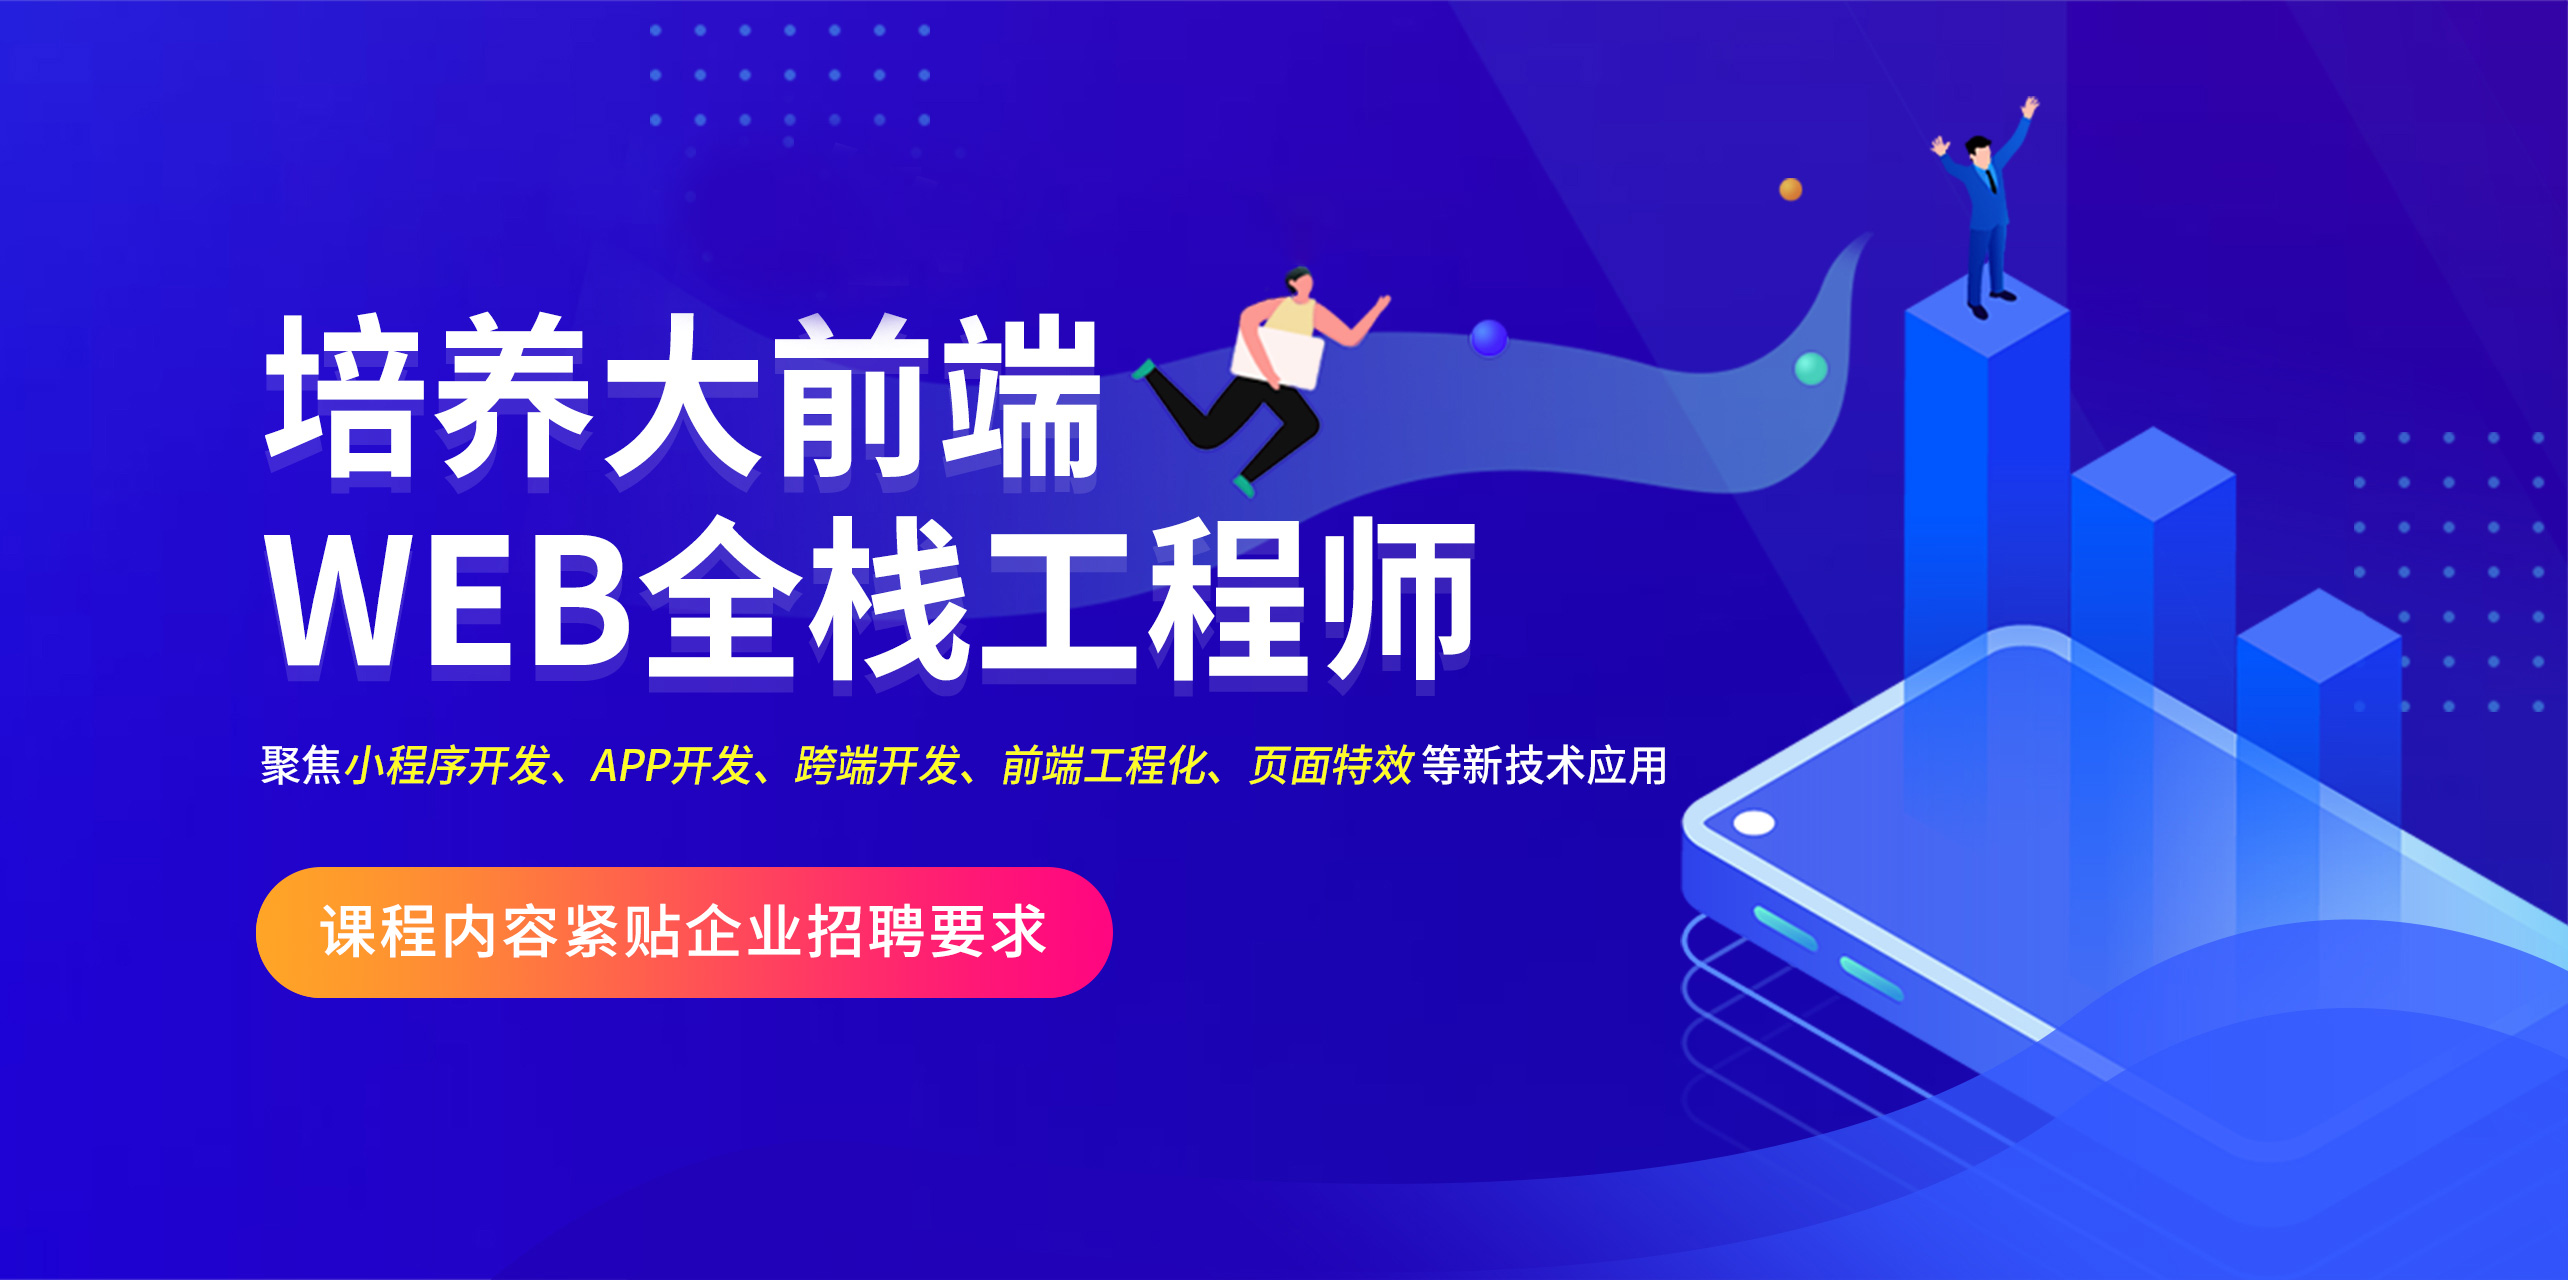 上海Web开发精品培训班-上海Web前端开发培训班-上海千锋it